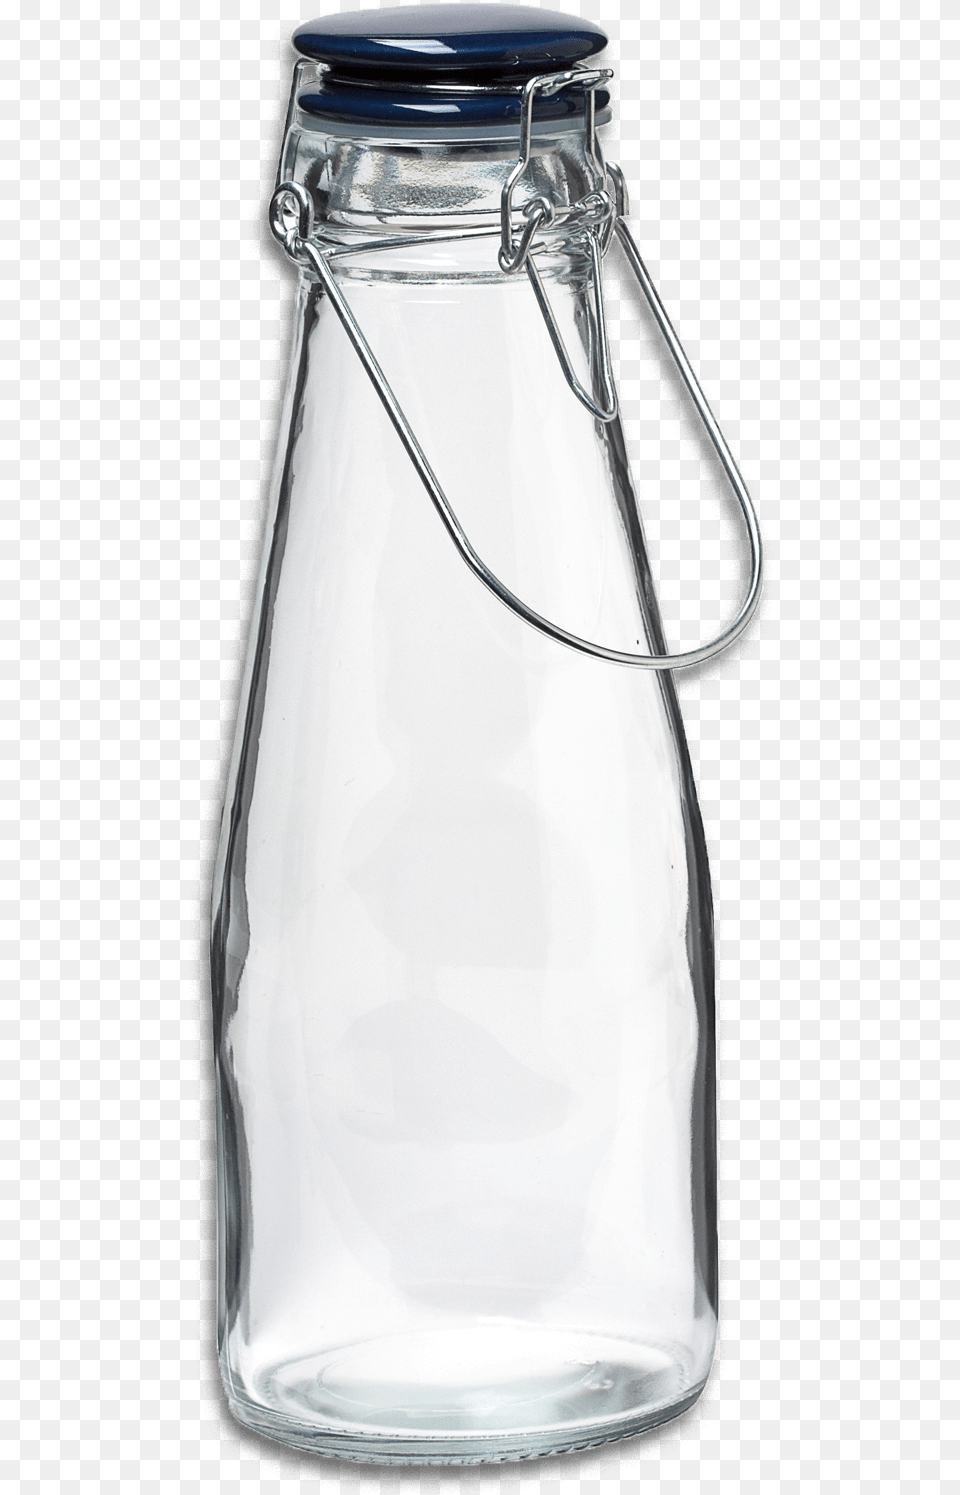 Clear 2 Glass Bottles, Jar, Alcohol, Beer, Beverage Png Image